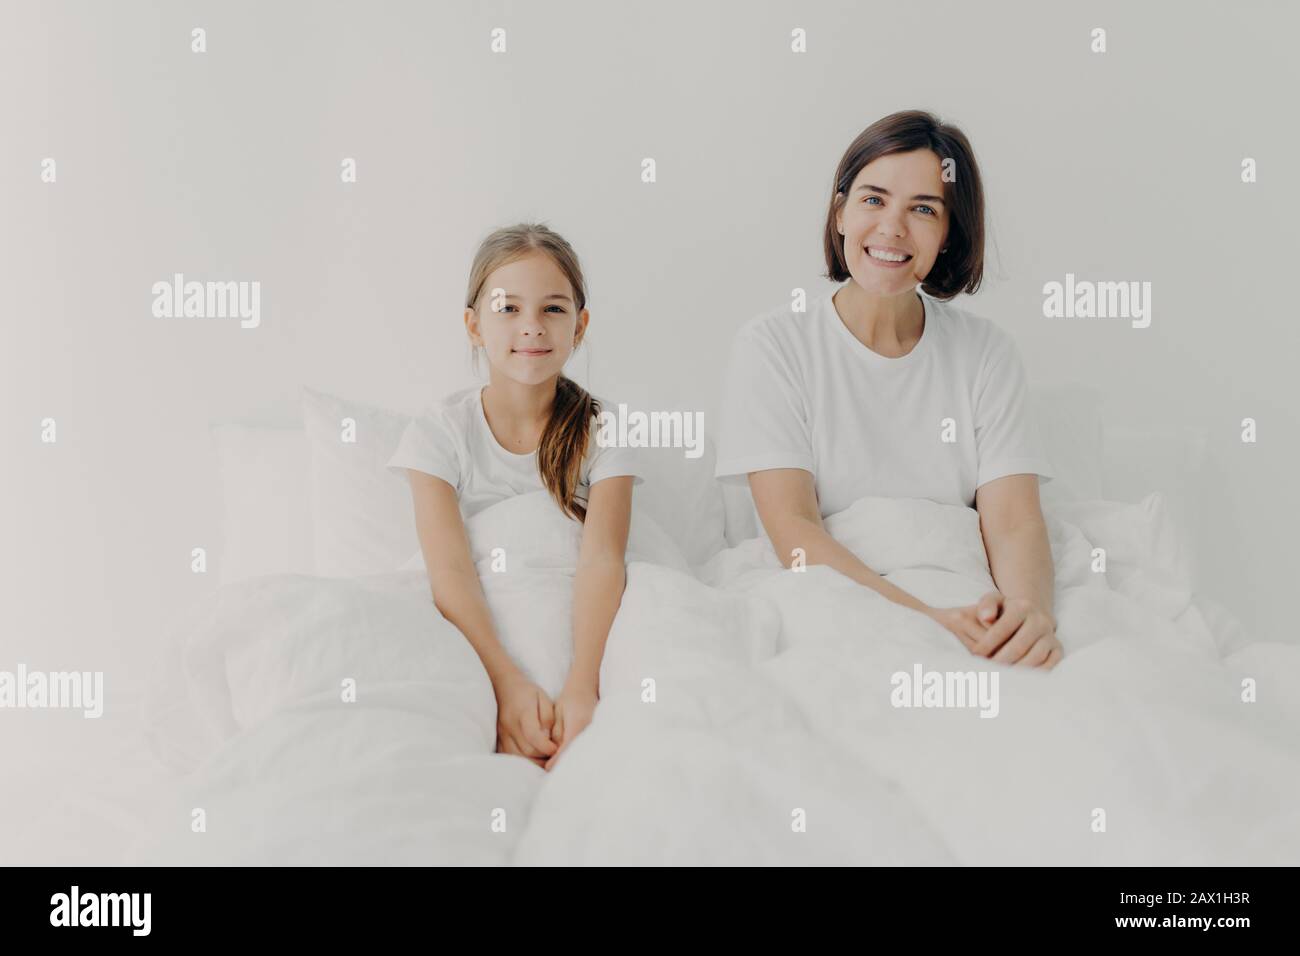 Morgenzeit und Erweckungskonzept. Fröhliche lächelnde Mutter und Tochter sitzen in einem komfortablen Bett, in weißen T-Shirts gekleidet, wach mit positiver Stimmung, gla Stockfoto